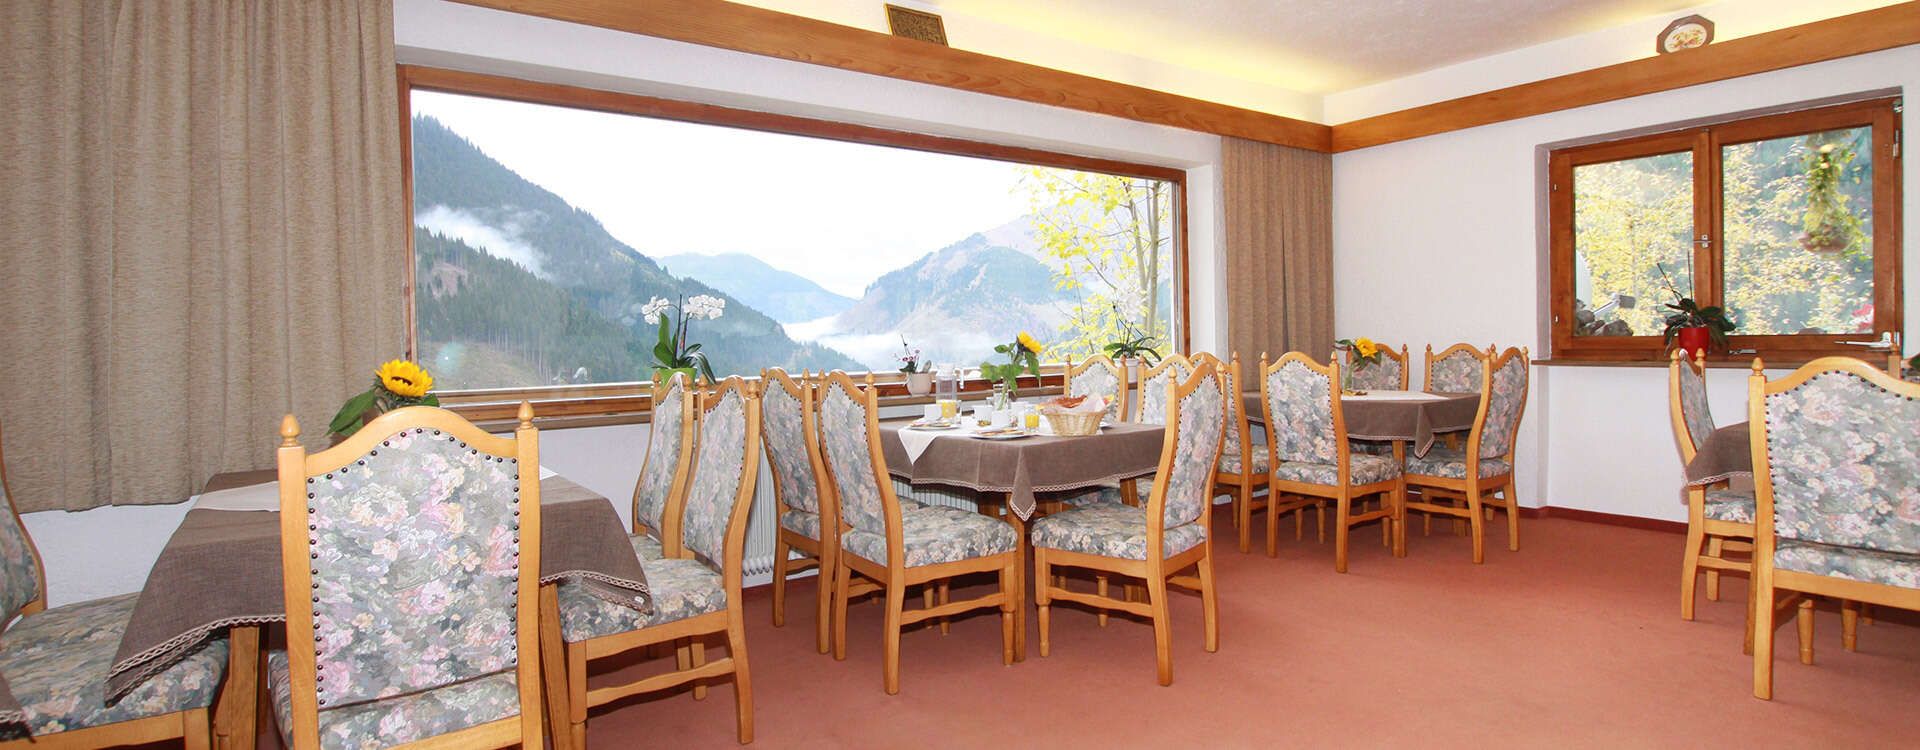 Frühstücksraum Haus Schöne Aussicht Berwang Tirol